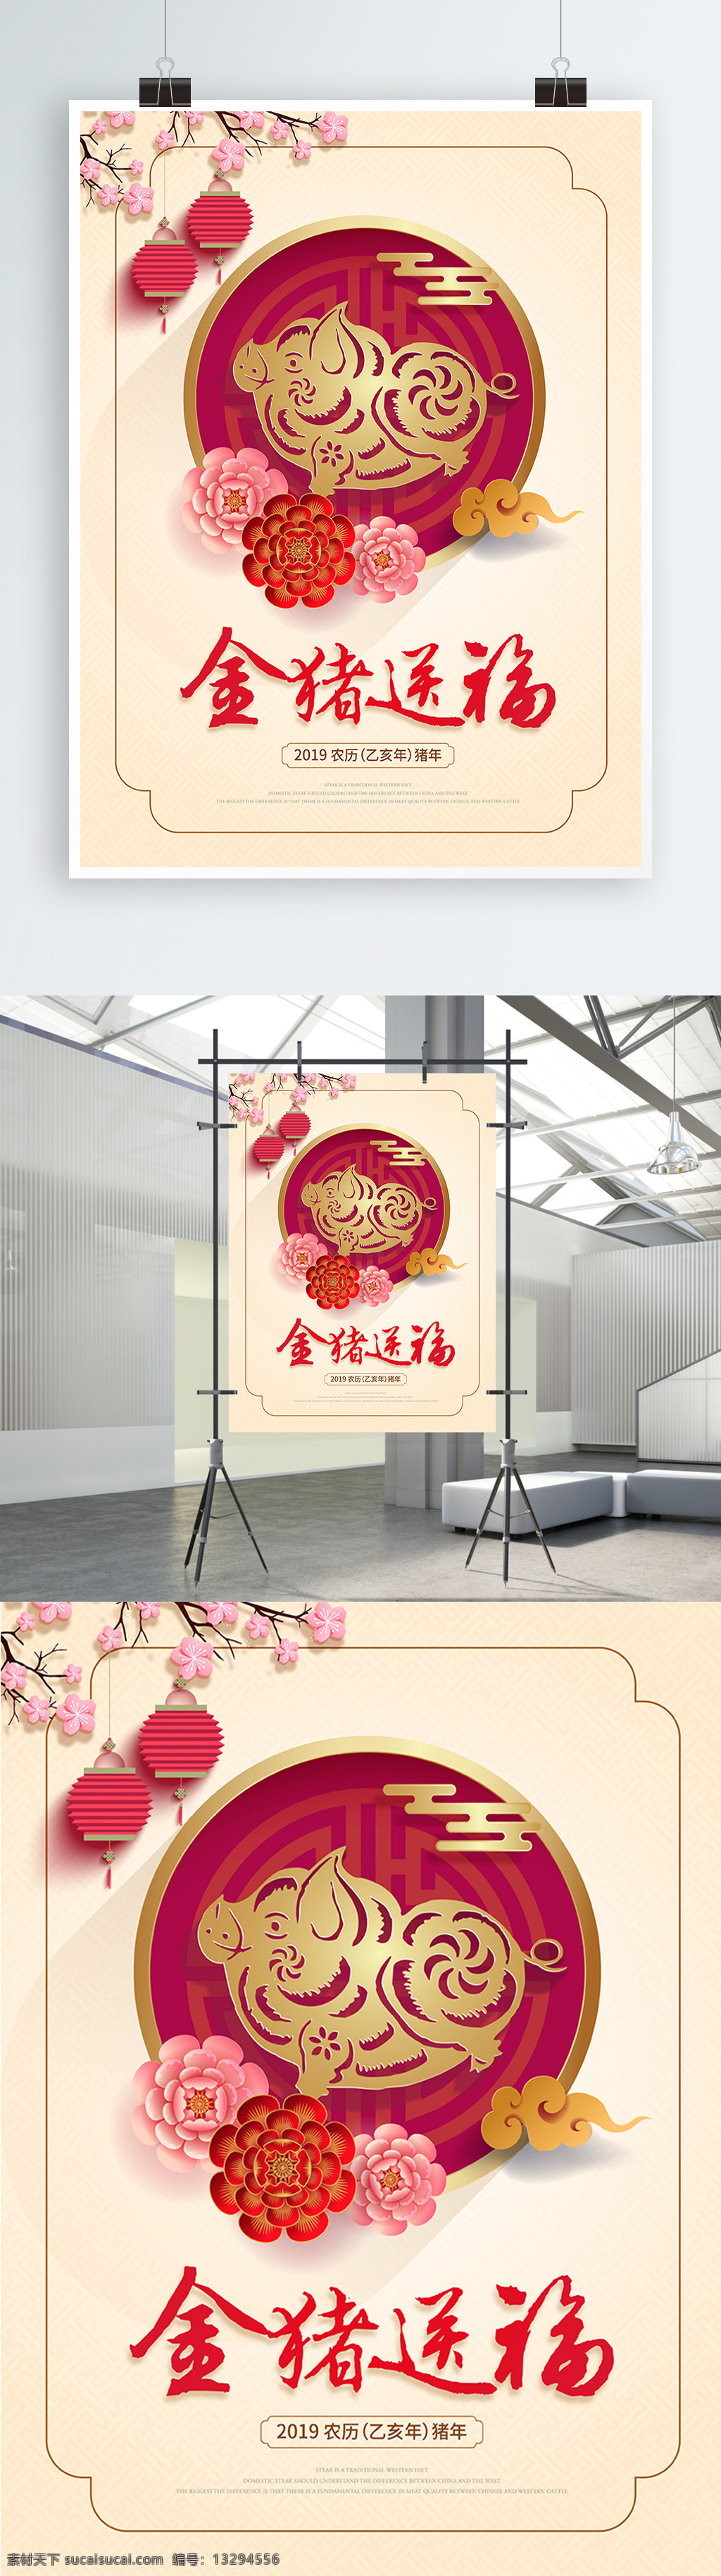 简约 中国 风 猪年 春节 海报 中国风 福猪海报 新年 年货 中式 2019 金猪送福 乙亥年